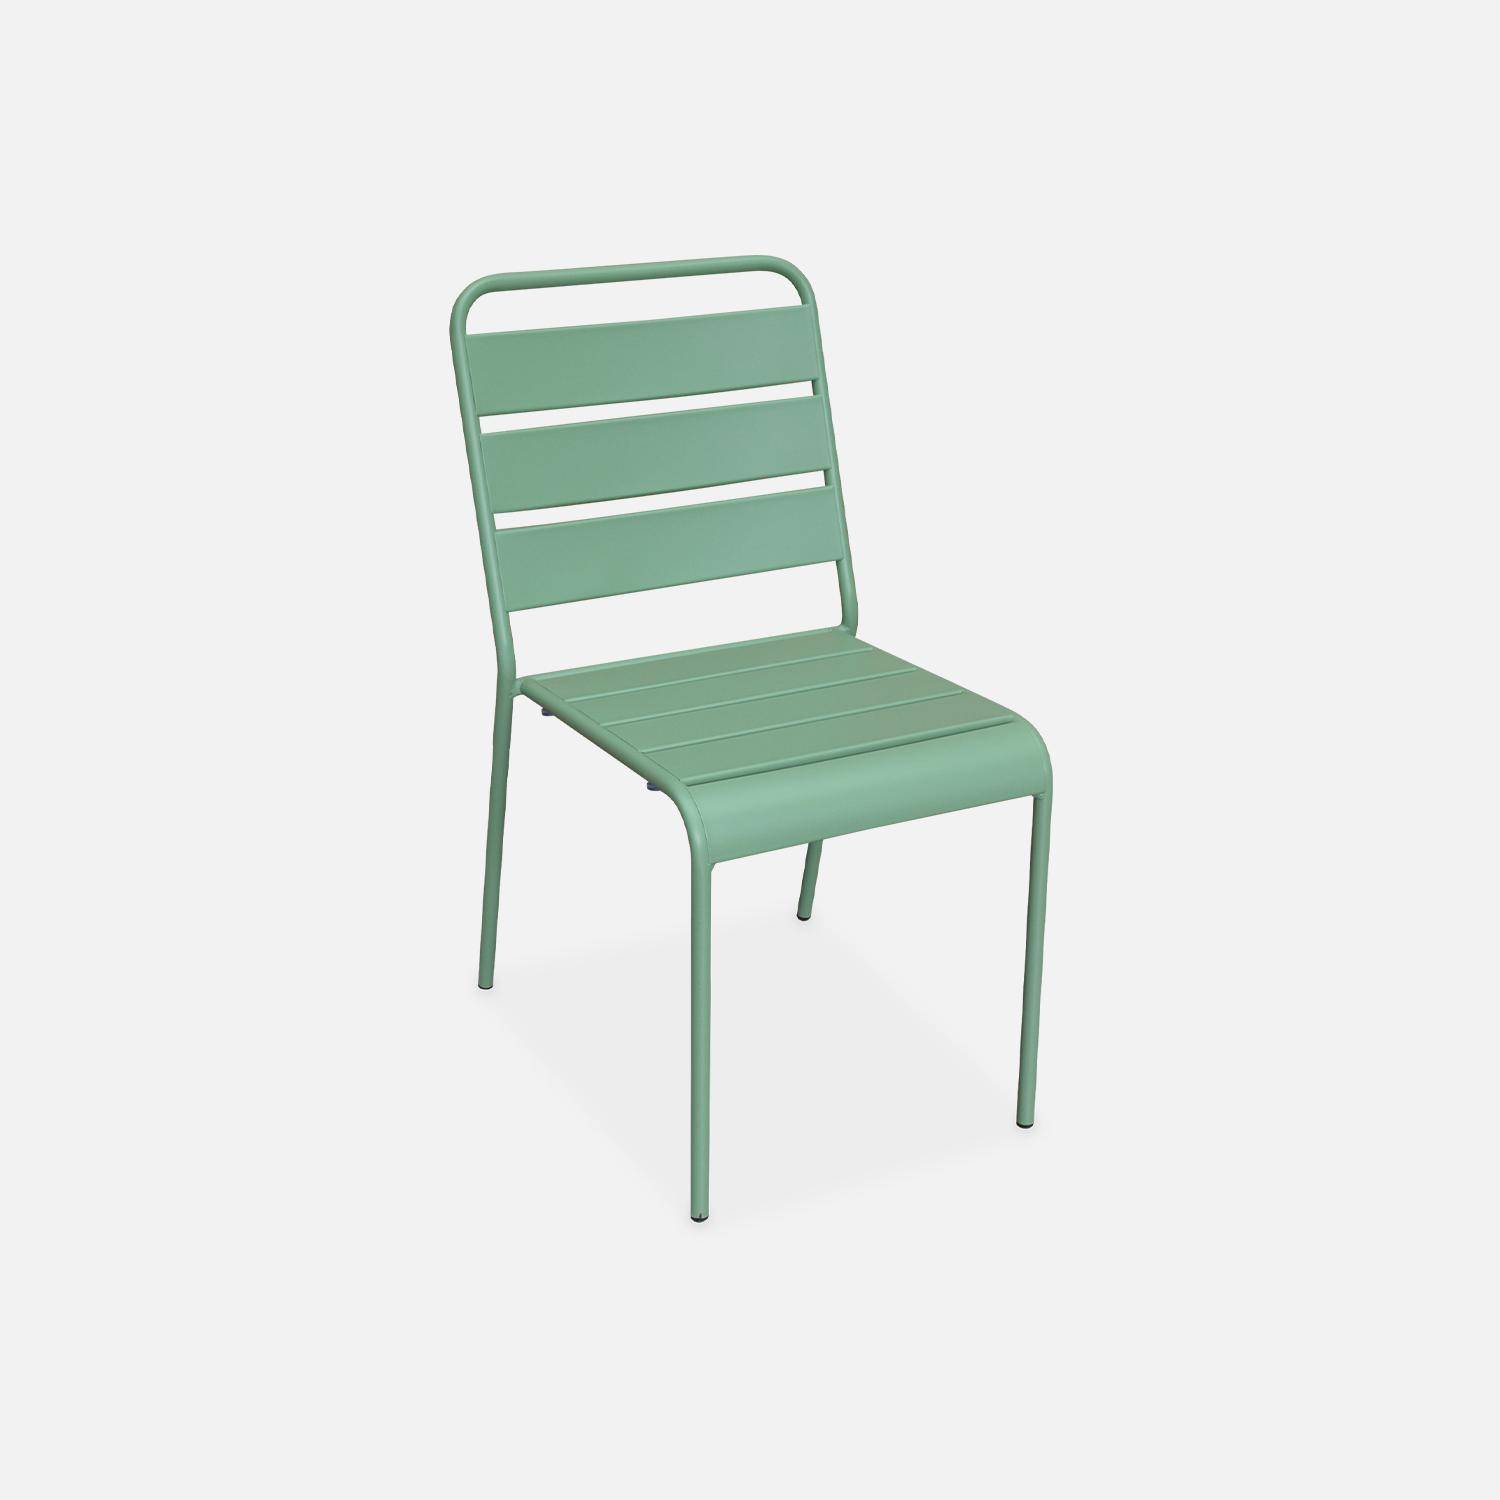 Lot de 4 chaises intérieur / extérieur en métal peinture antirouille empilables coloris vert jade,sweeek,Photo2